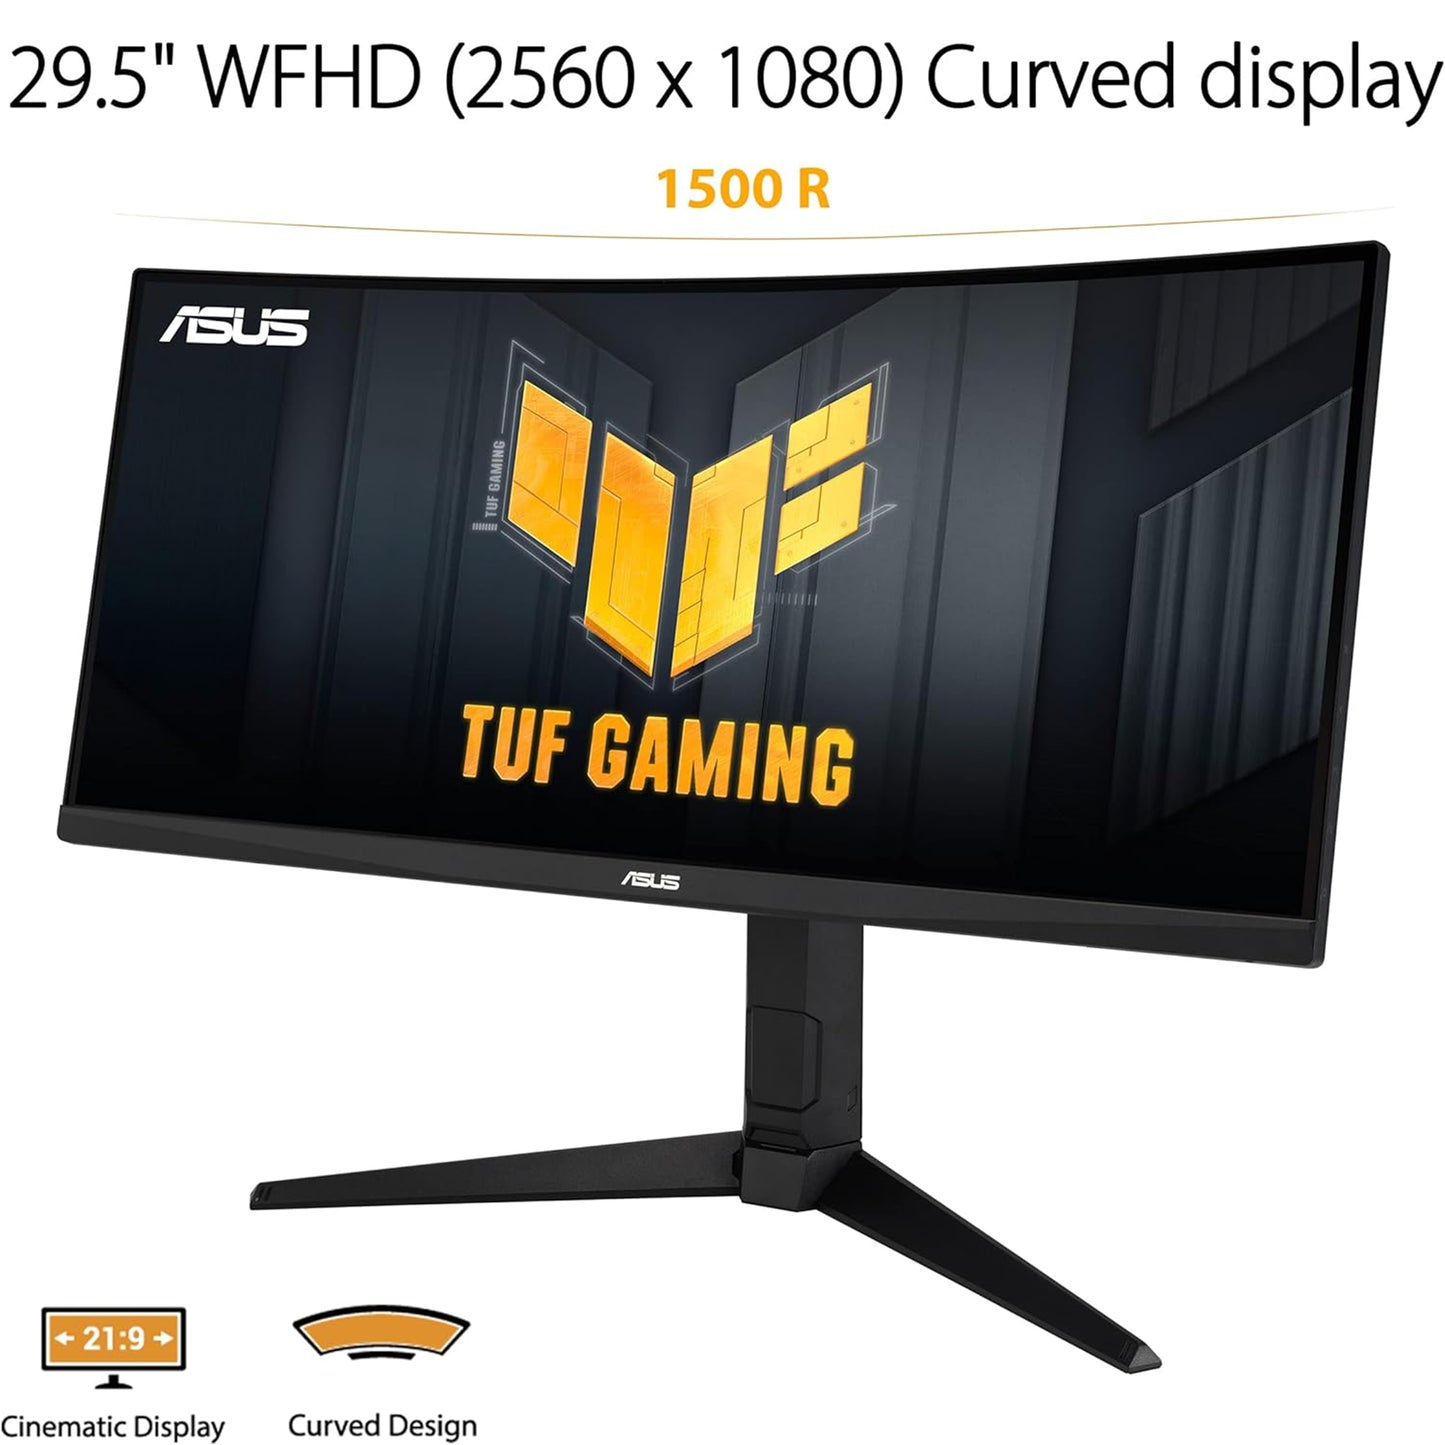 شاشة ASUS TUF Gaming مقاس 30 بوصة 21:9 1080P منحنية HDR (VG30VQL1A) - WFHD (2560 × 1080)، 200 هرتز (يدعم 144 هرتز)، 1 مللي ثانية، طمس حركة منخفض للغاية، FreeSync Premium، العناية بالعين، DisplayPort، HDMI، أسود